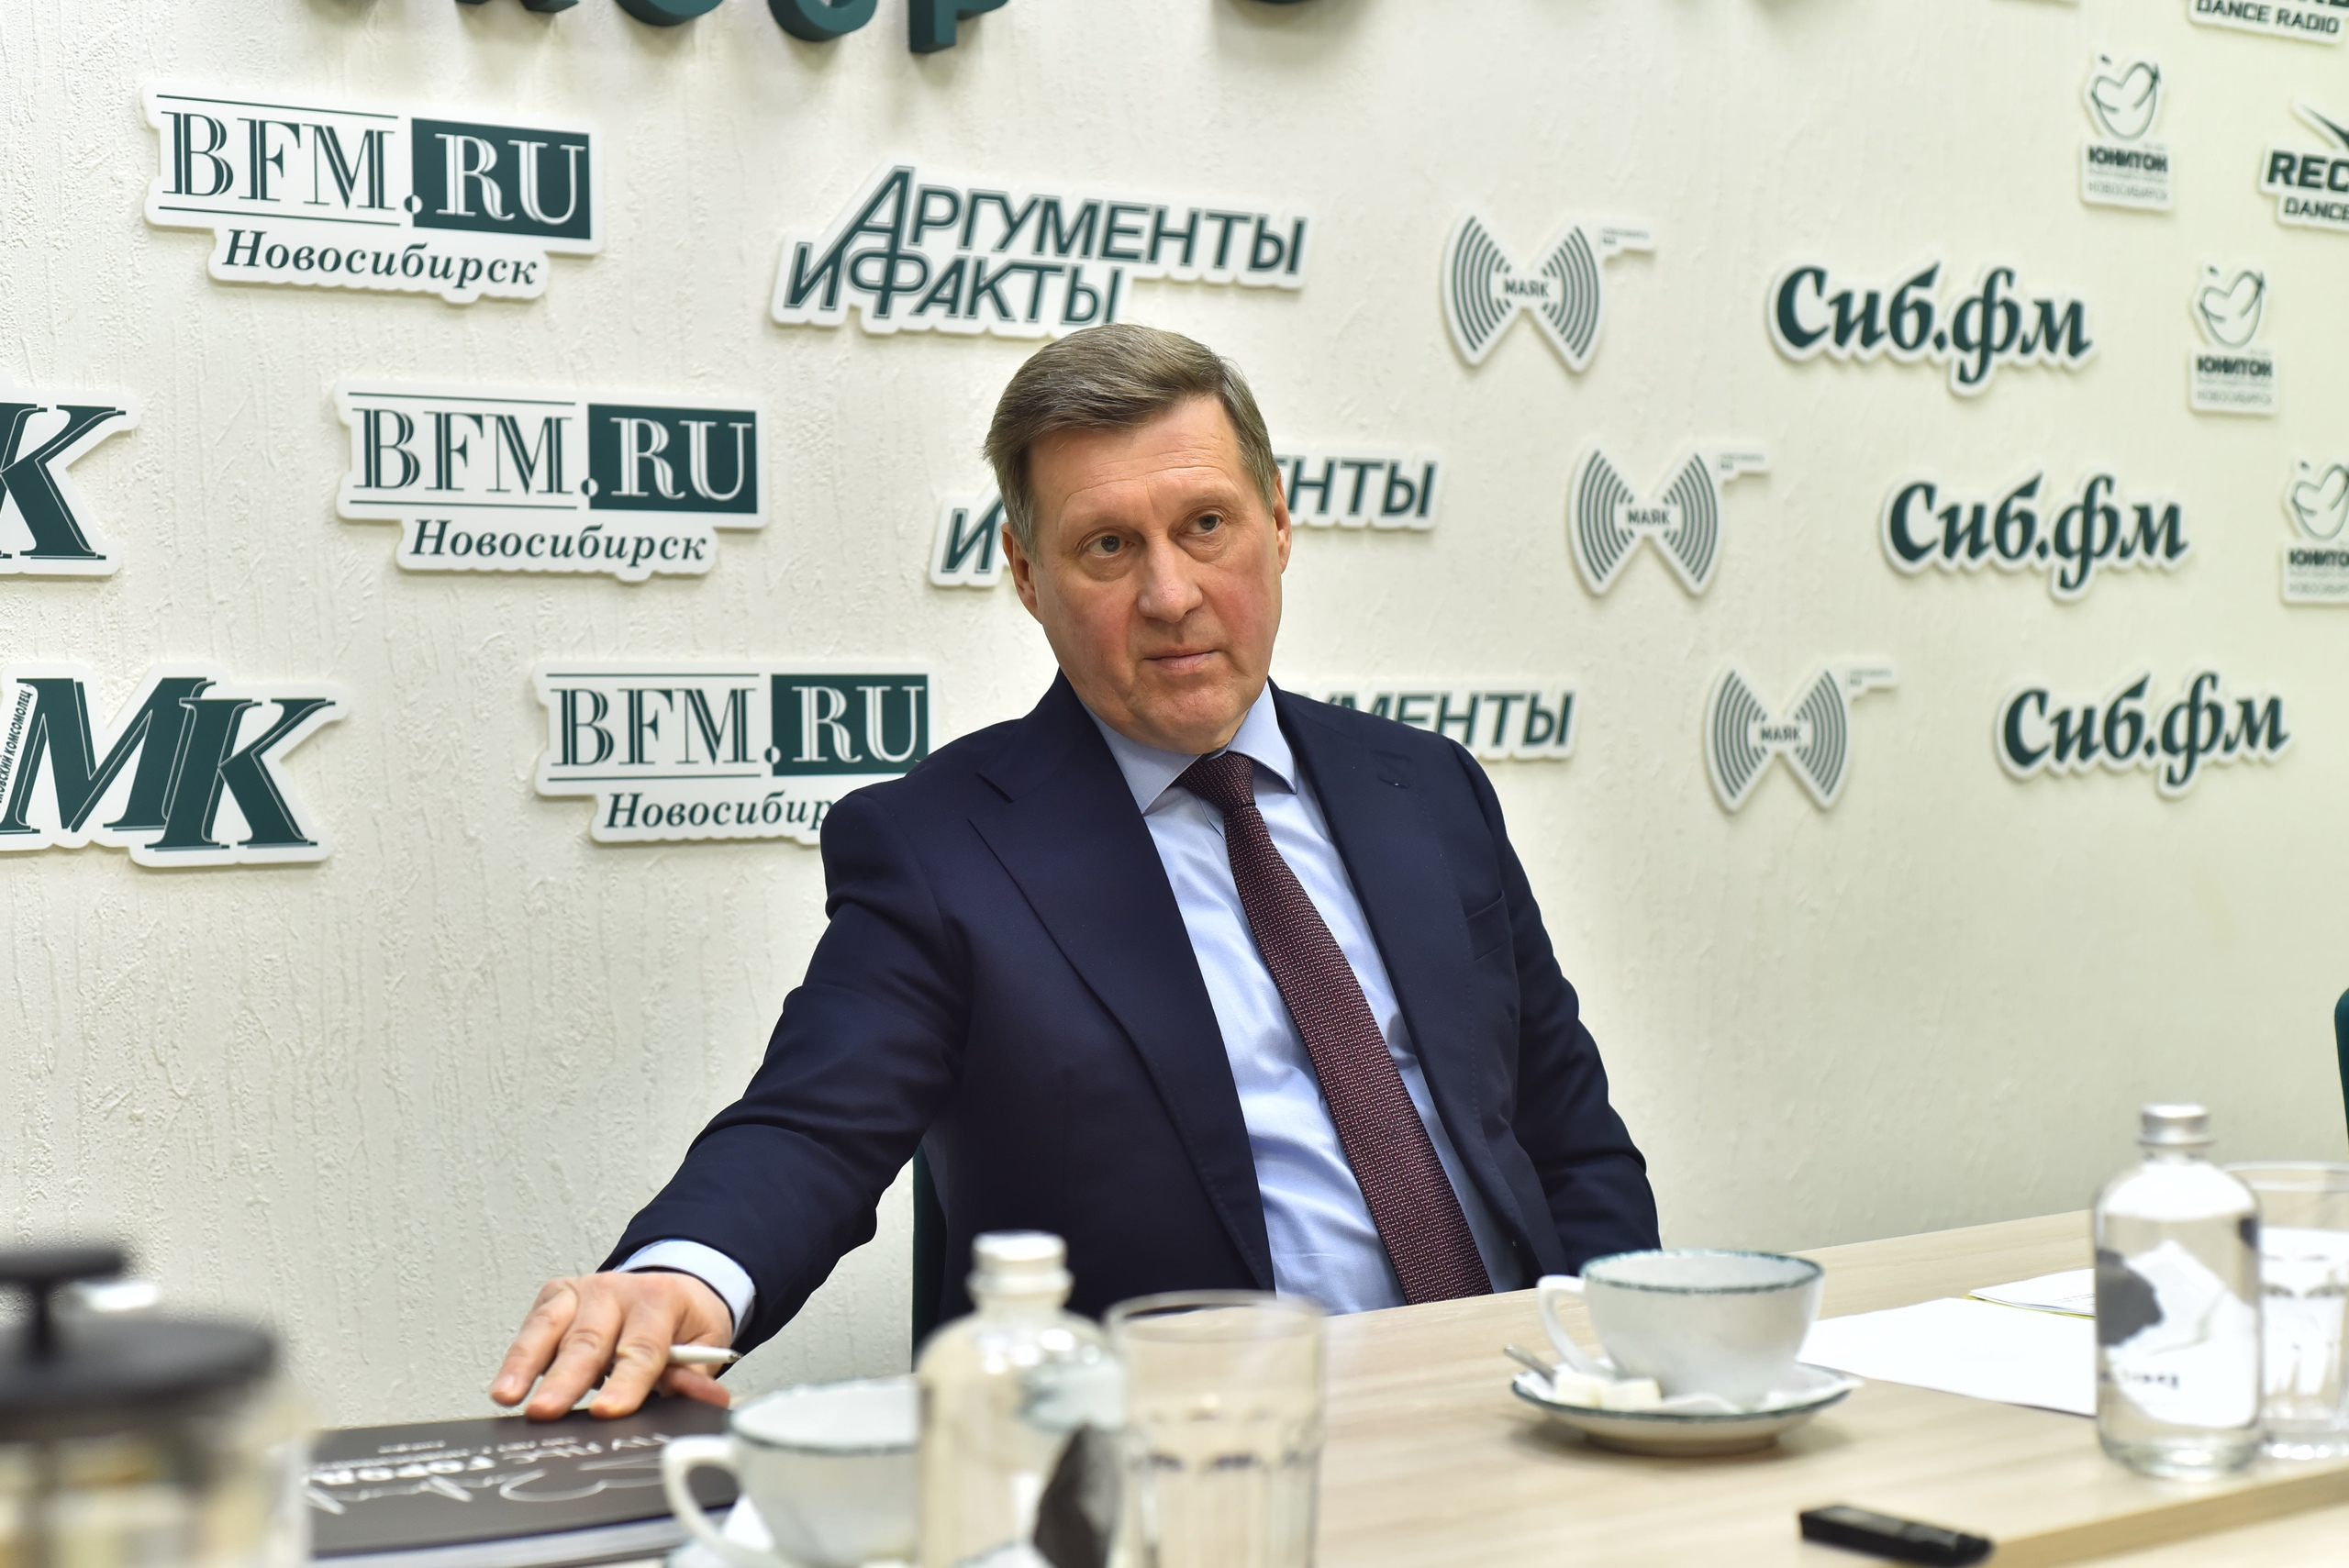 Анатолий Локоть вспомнил, как 10 лет назад победил на выборах мэра Новосибирска